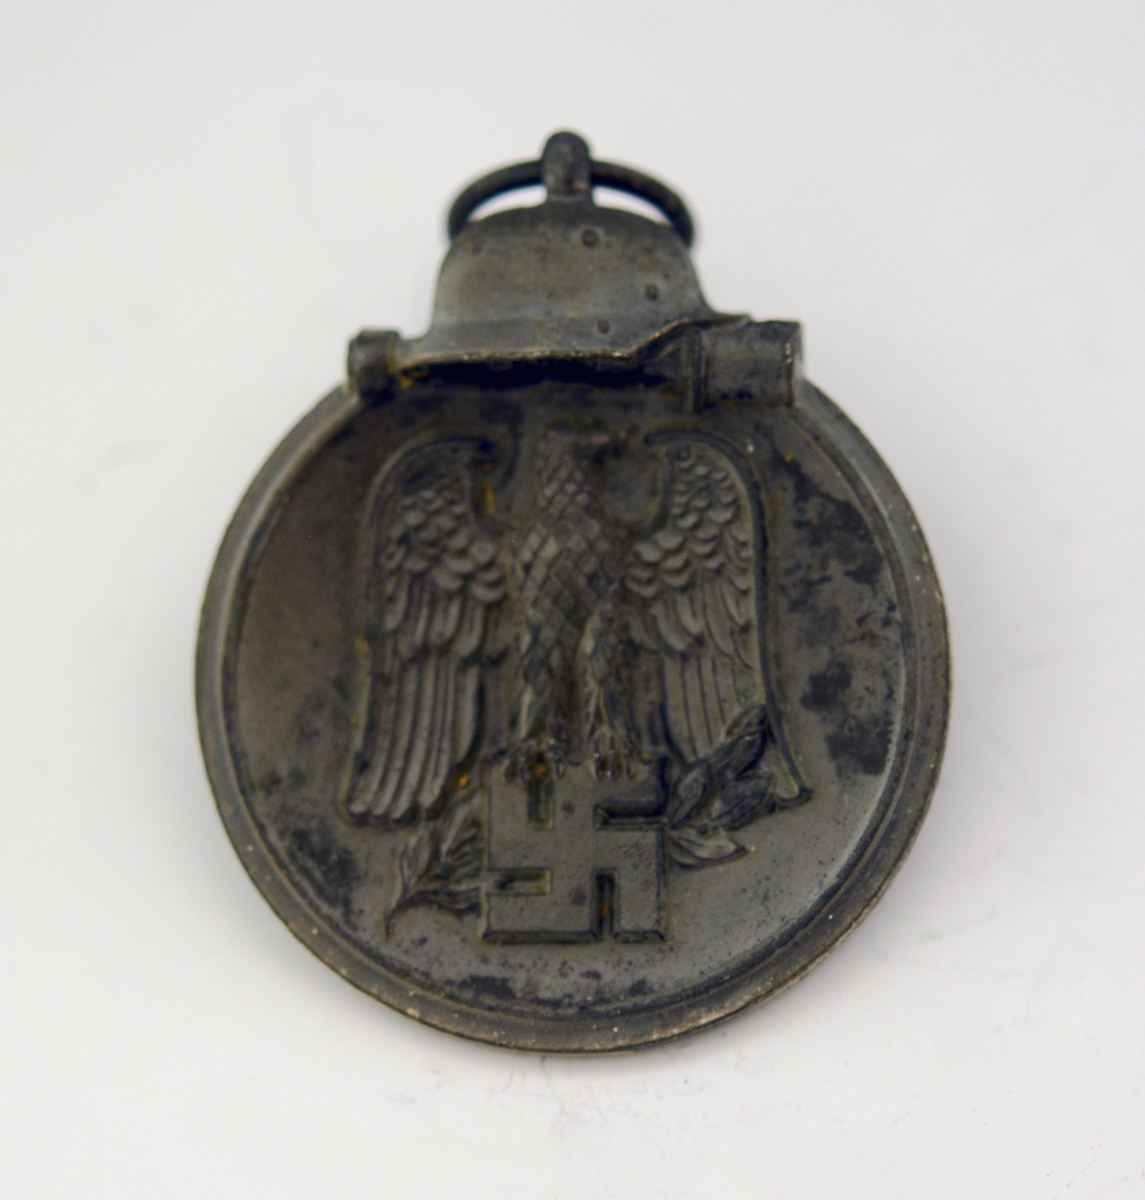 Prot: Tysk medalje fra 2. verdenskrig. "Winterschlacht im Osten 1941-42".